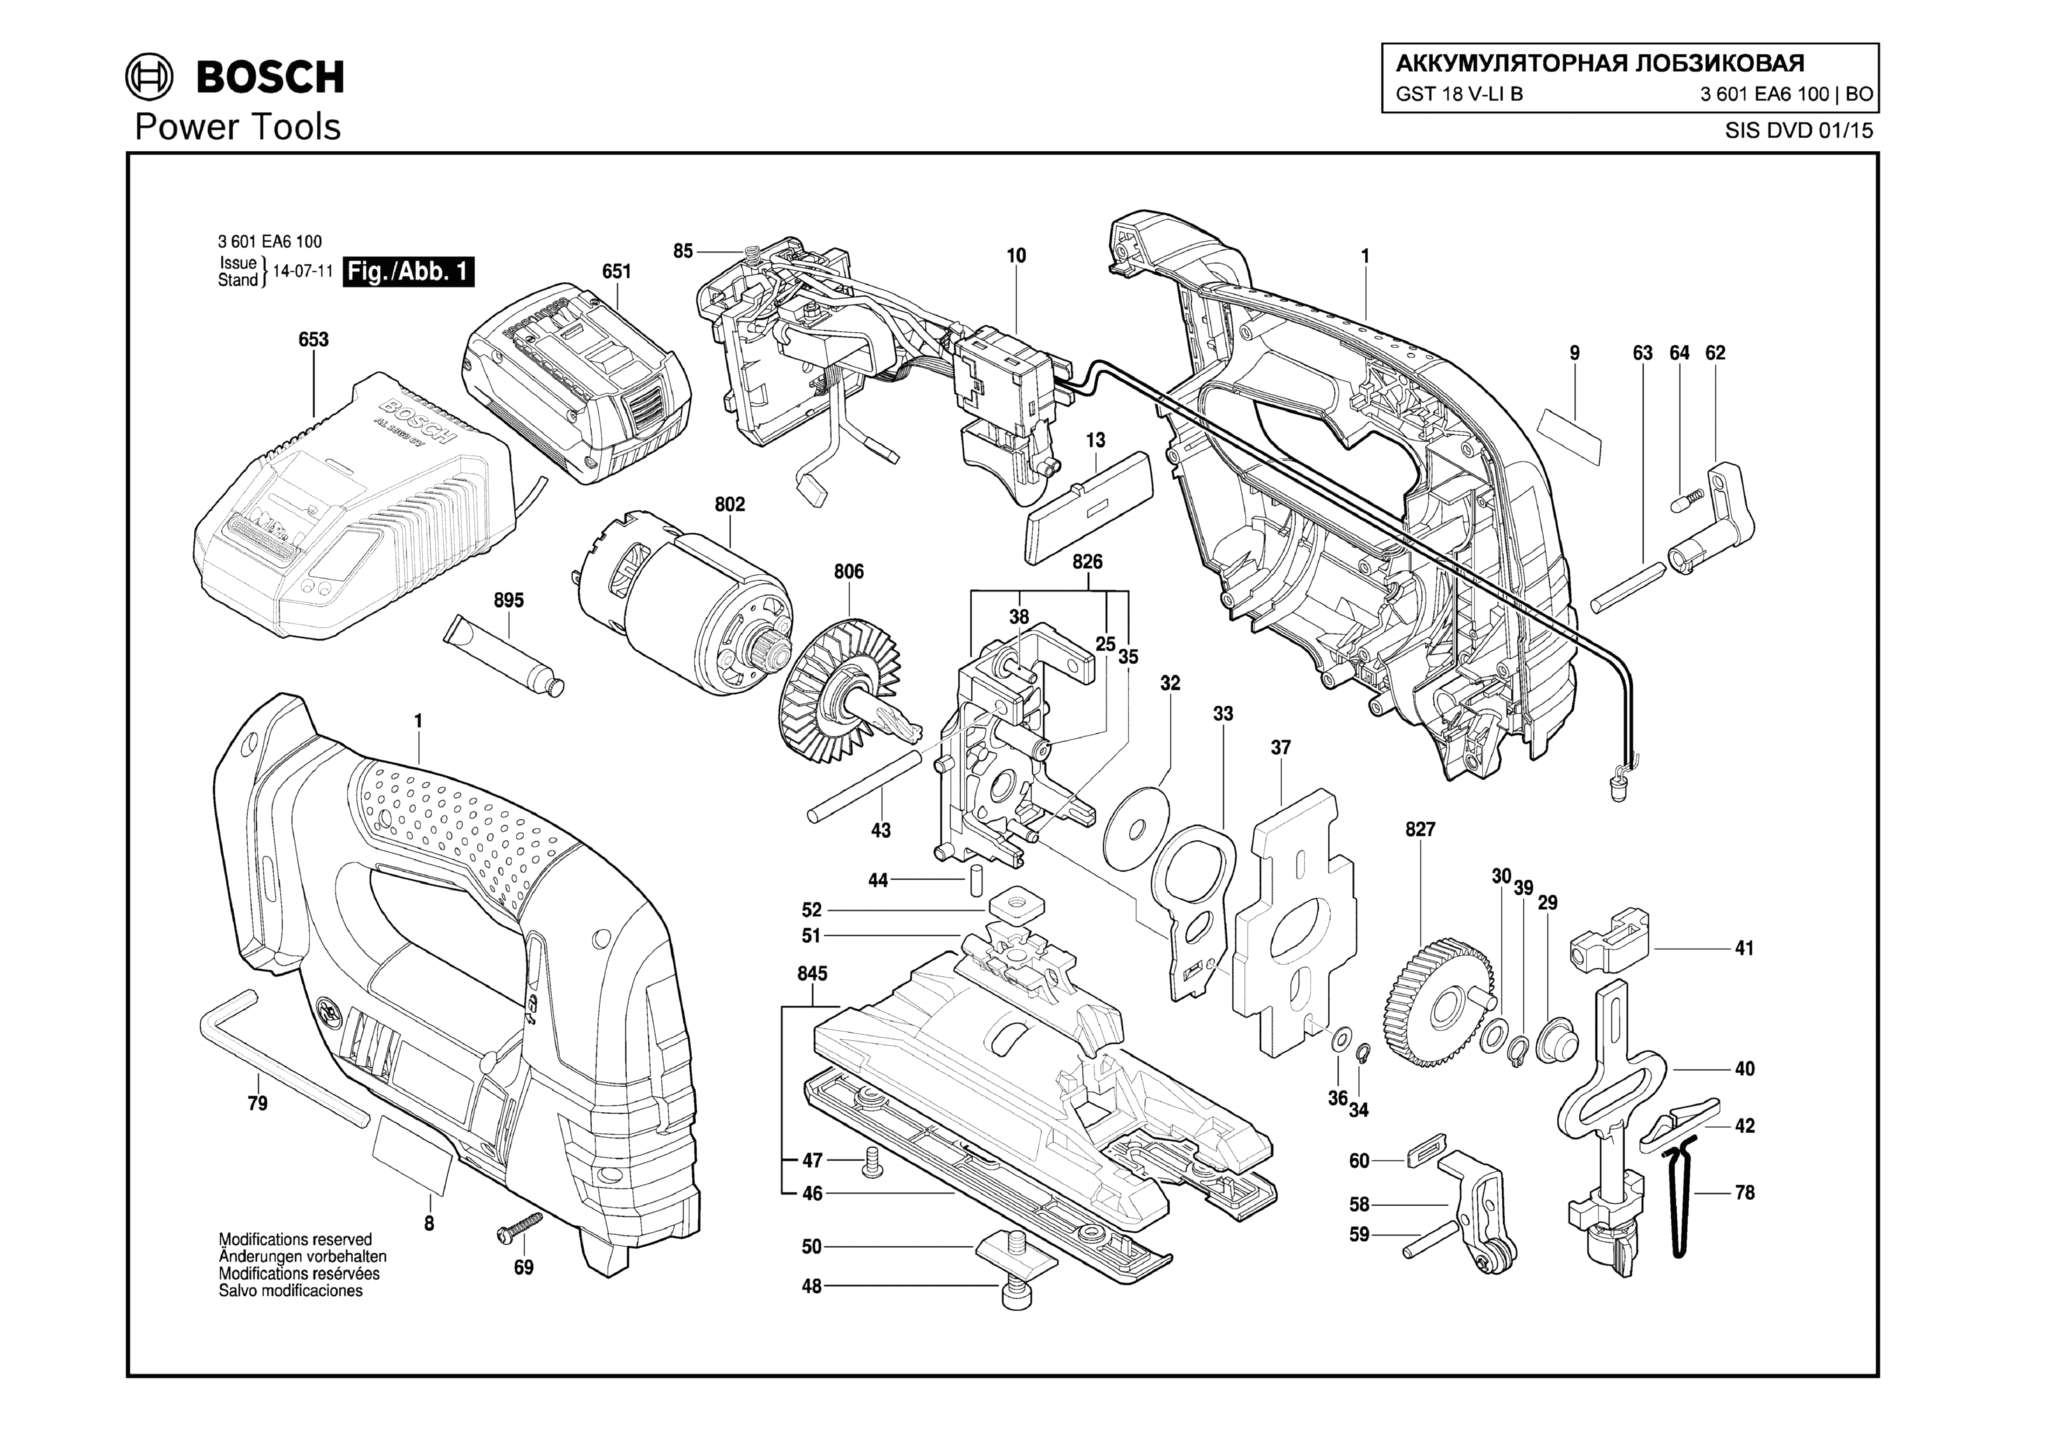 Запчасти, схема и деталировка Bosch GST 18 V-LI B (ТИП 3601EA6100)